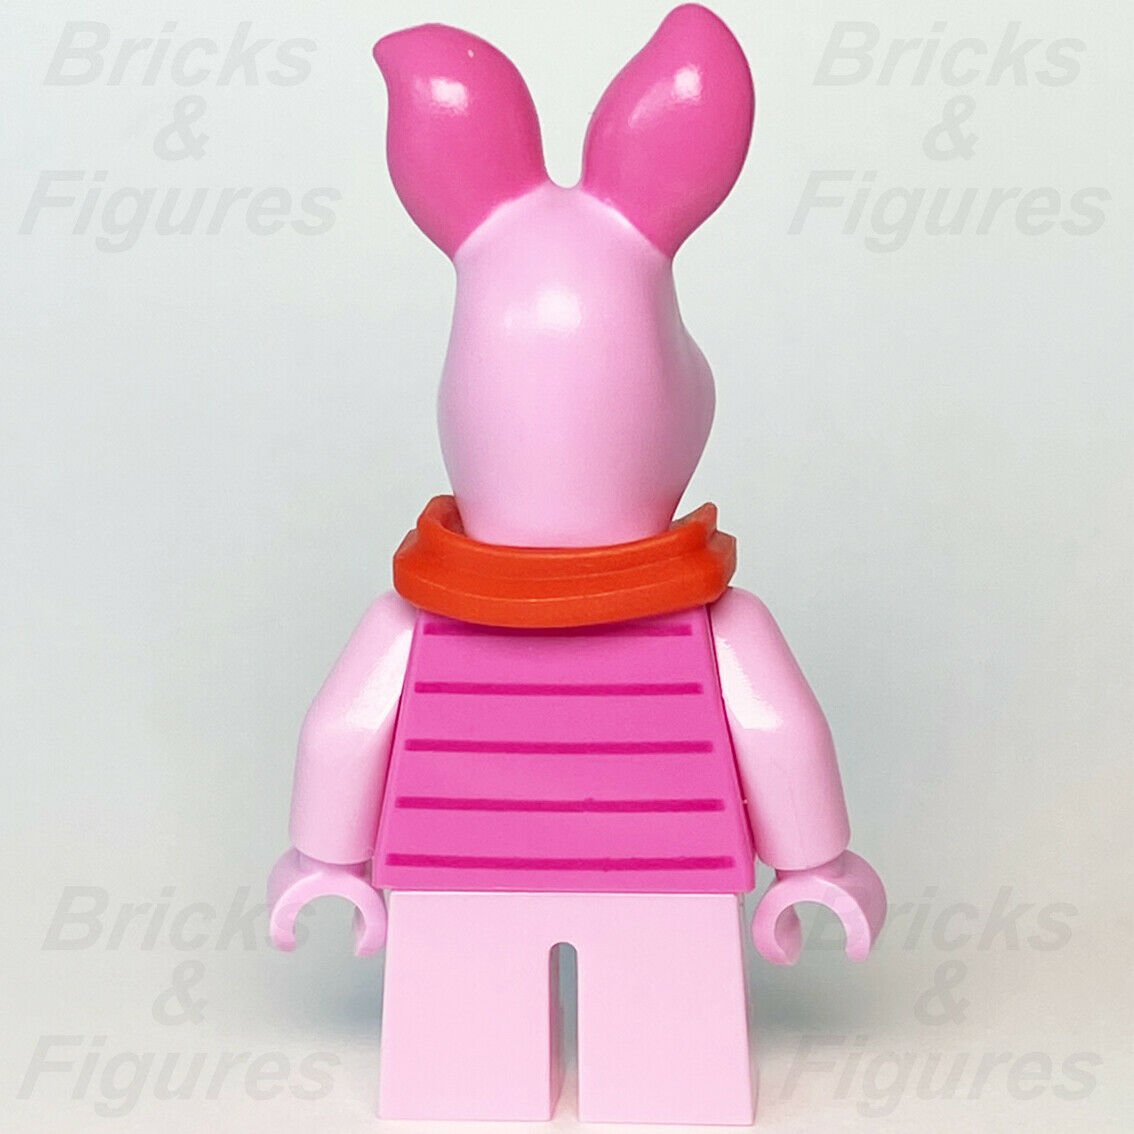 New Ideas LEGO Piglet CUUSOO Winnie the Pooh Minifigure 21326 idea088 - Bricks & Figures